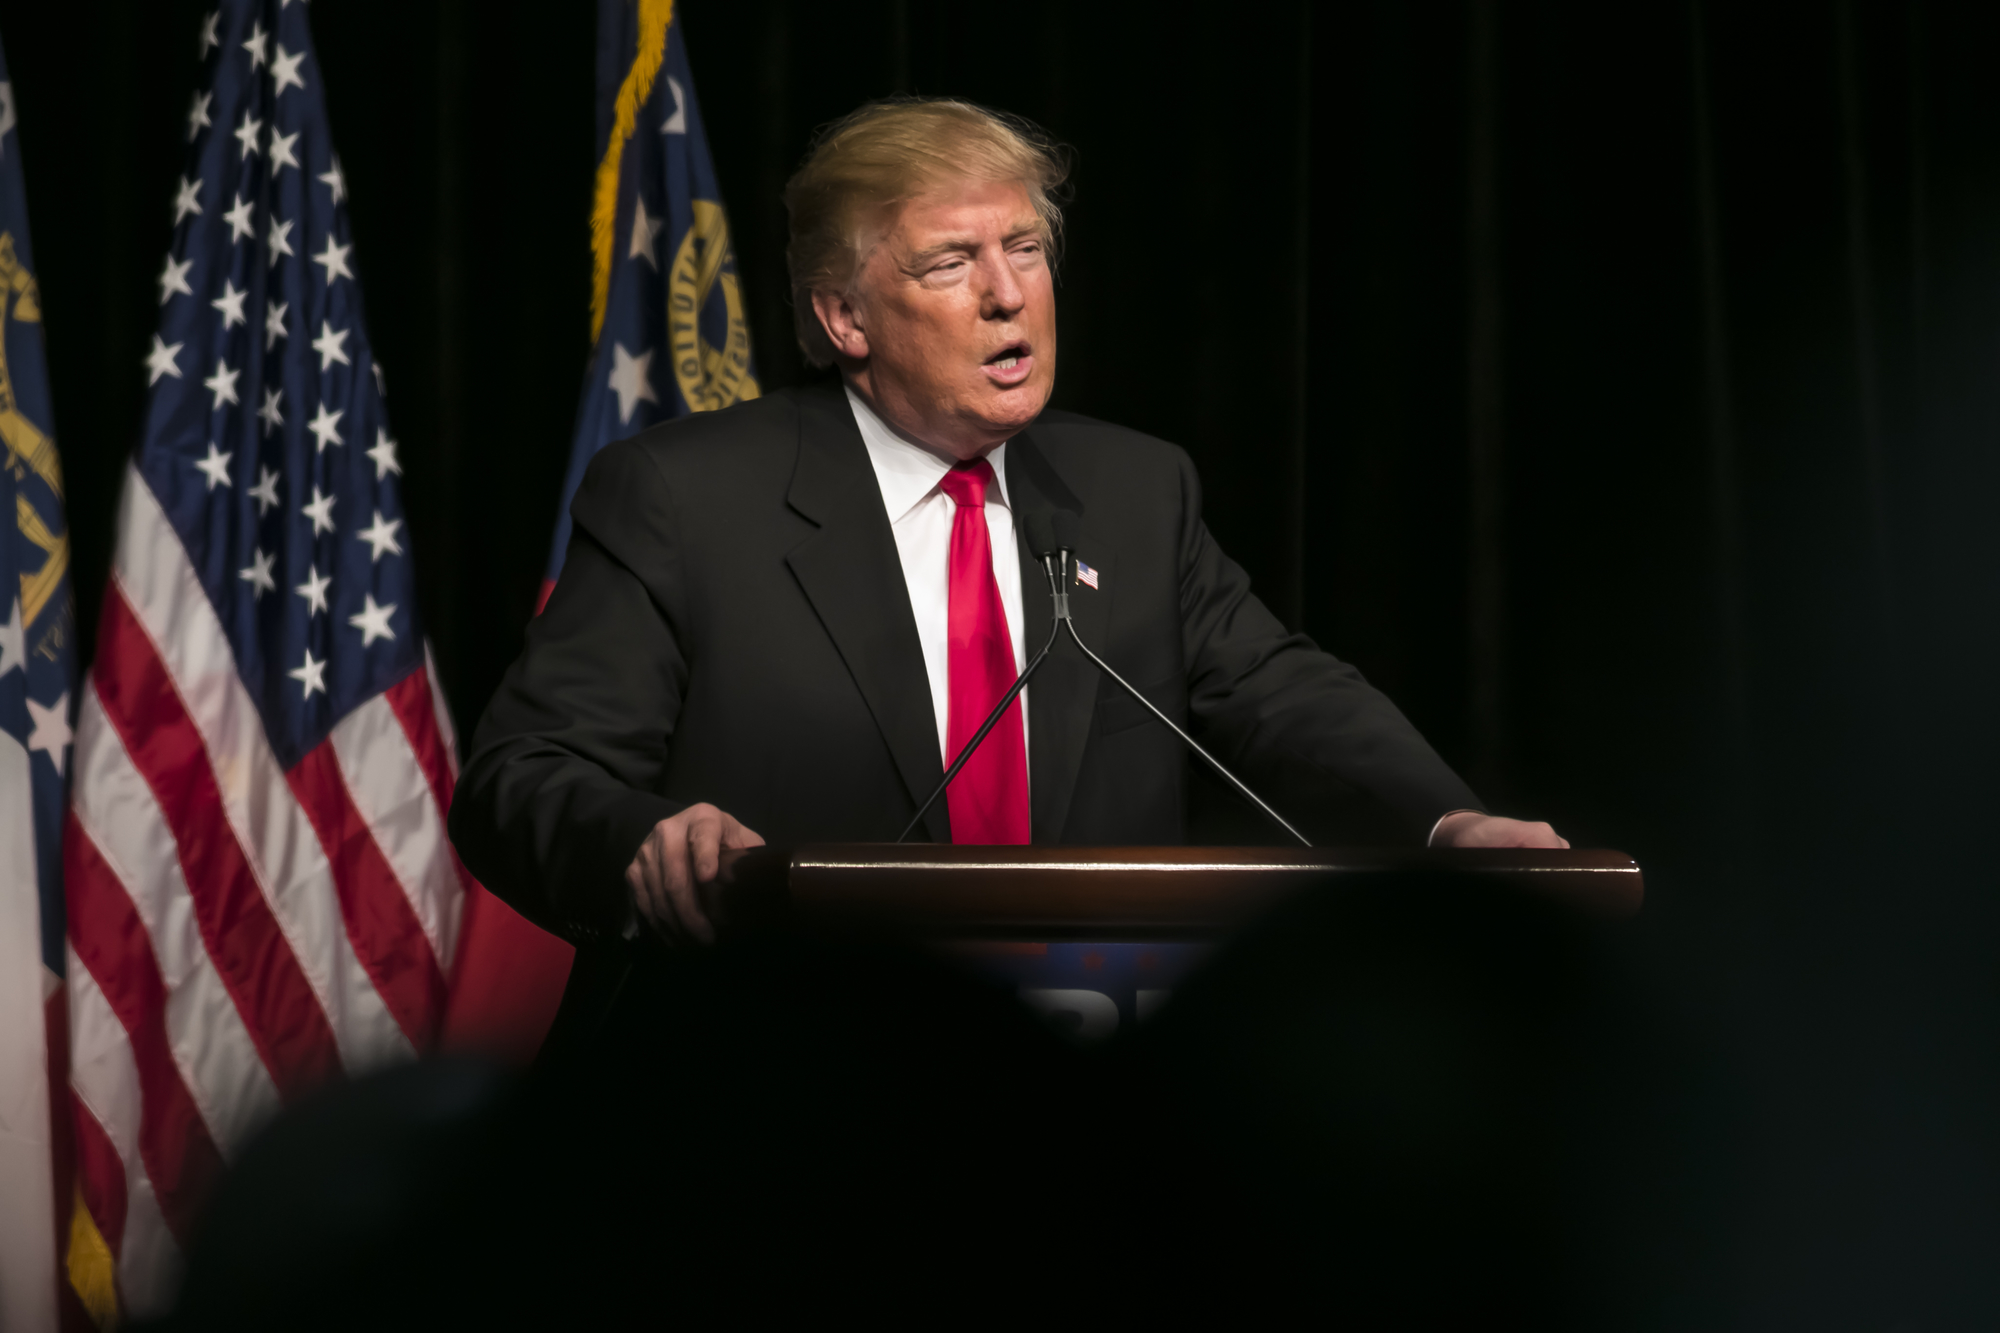 Trump a közrenddel kapcsolatos nézeteit hangsúlyozta a West Point katonai akadémián